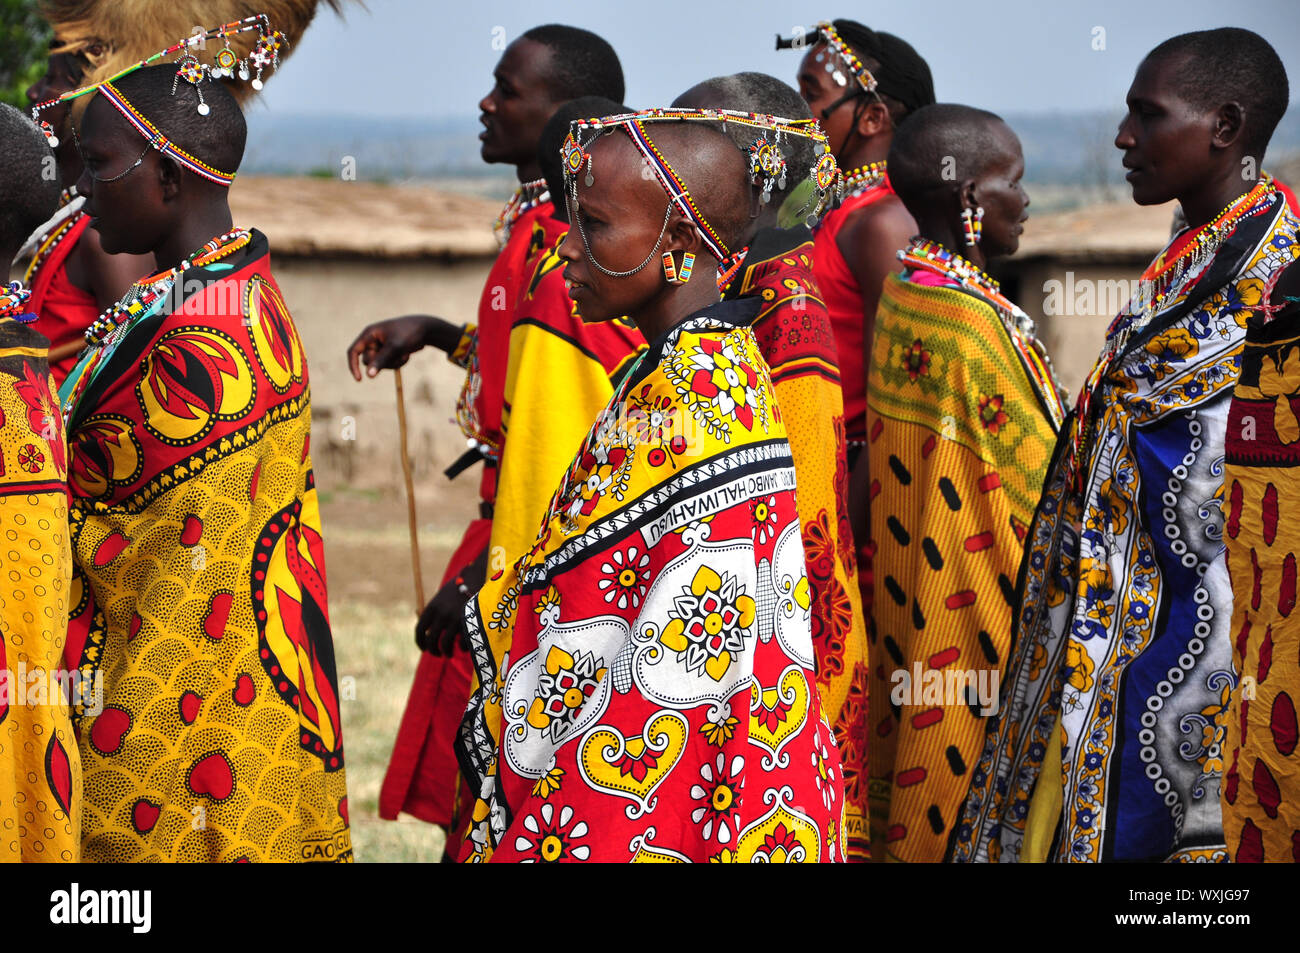 MASAI MARA NATIONAL RESERVE, Kenia - 19. August 2010. Gruppe von Massai Frauen und Männer singen und dabei eine Willkommen Tanz. Stockfoto